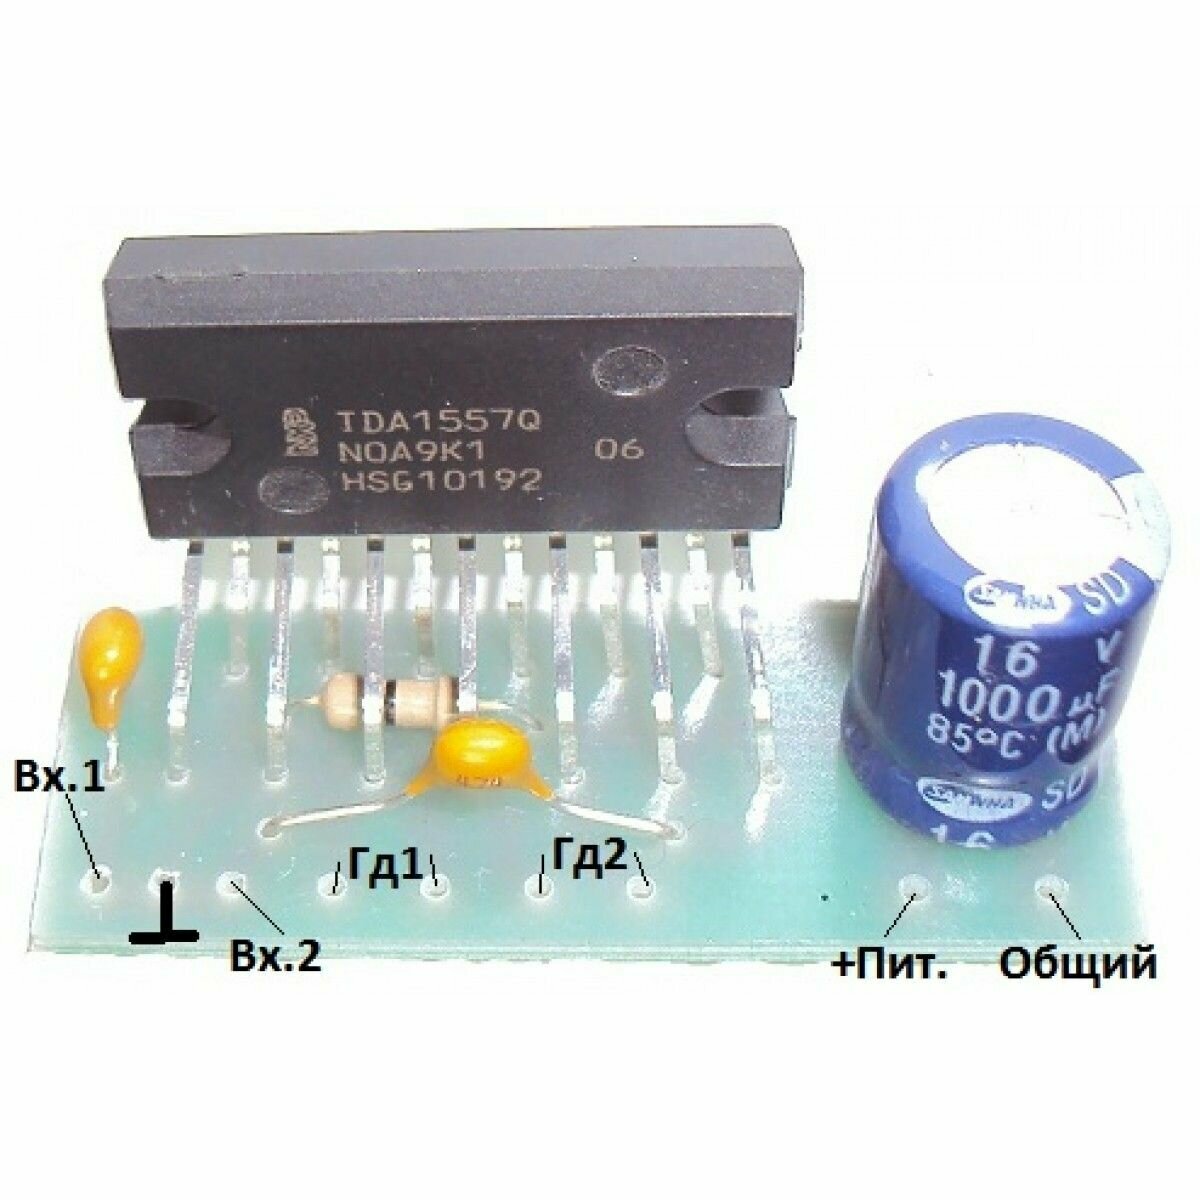 Радиоконструктор 008 - Усилитель мощности низкой частоты на микросхеме TDA1557Q